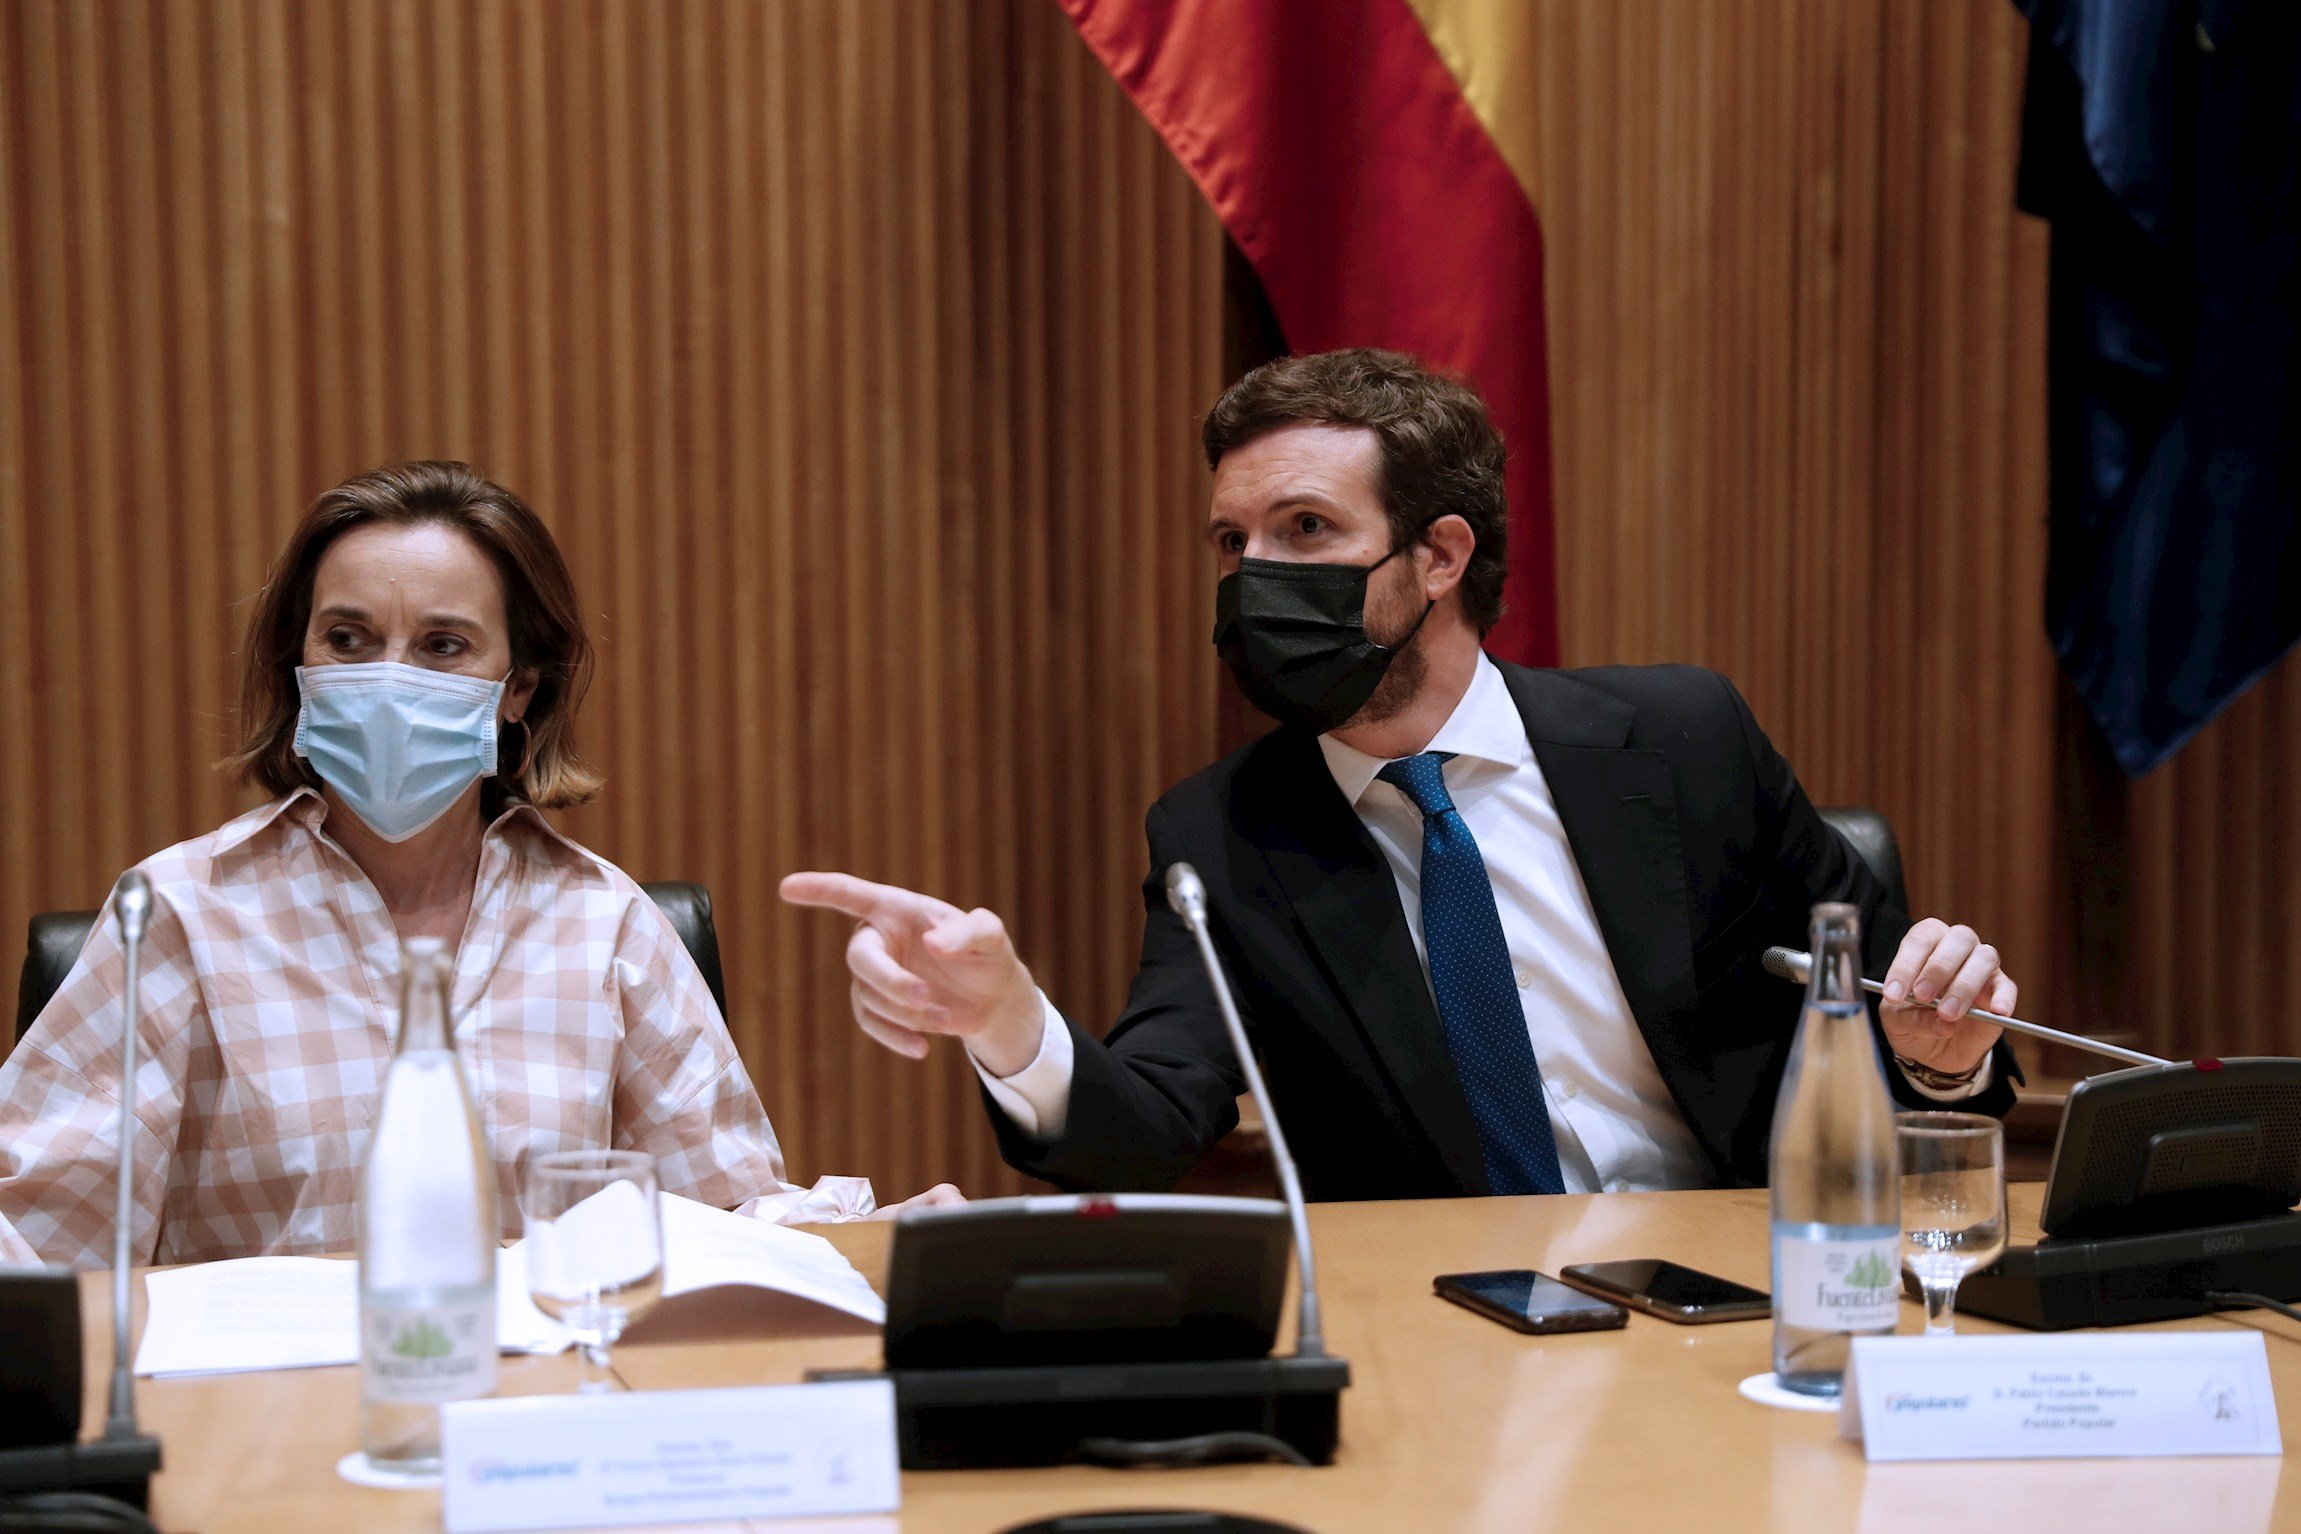 Casado arremet contra Sánchez pels indults: "Desacatament a la legalitat"